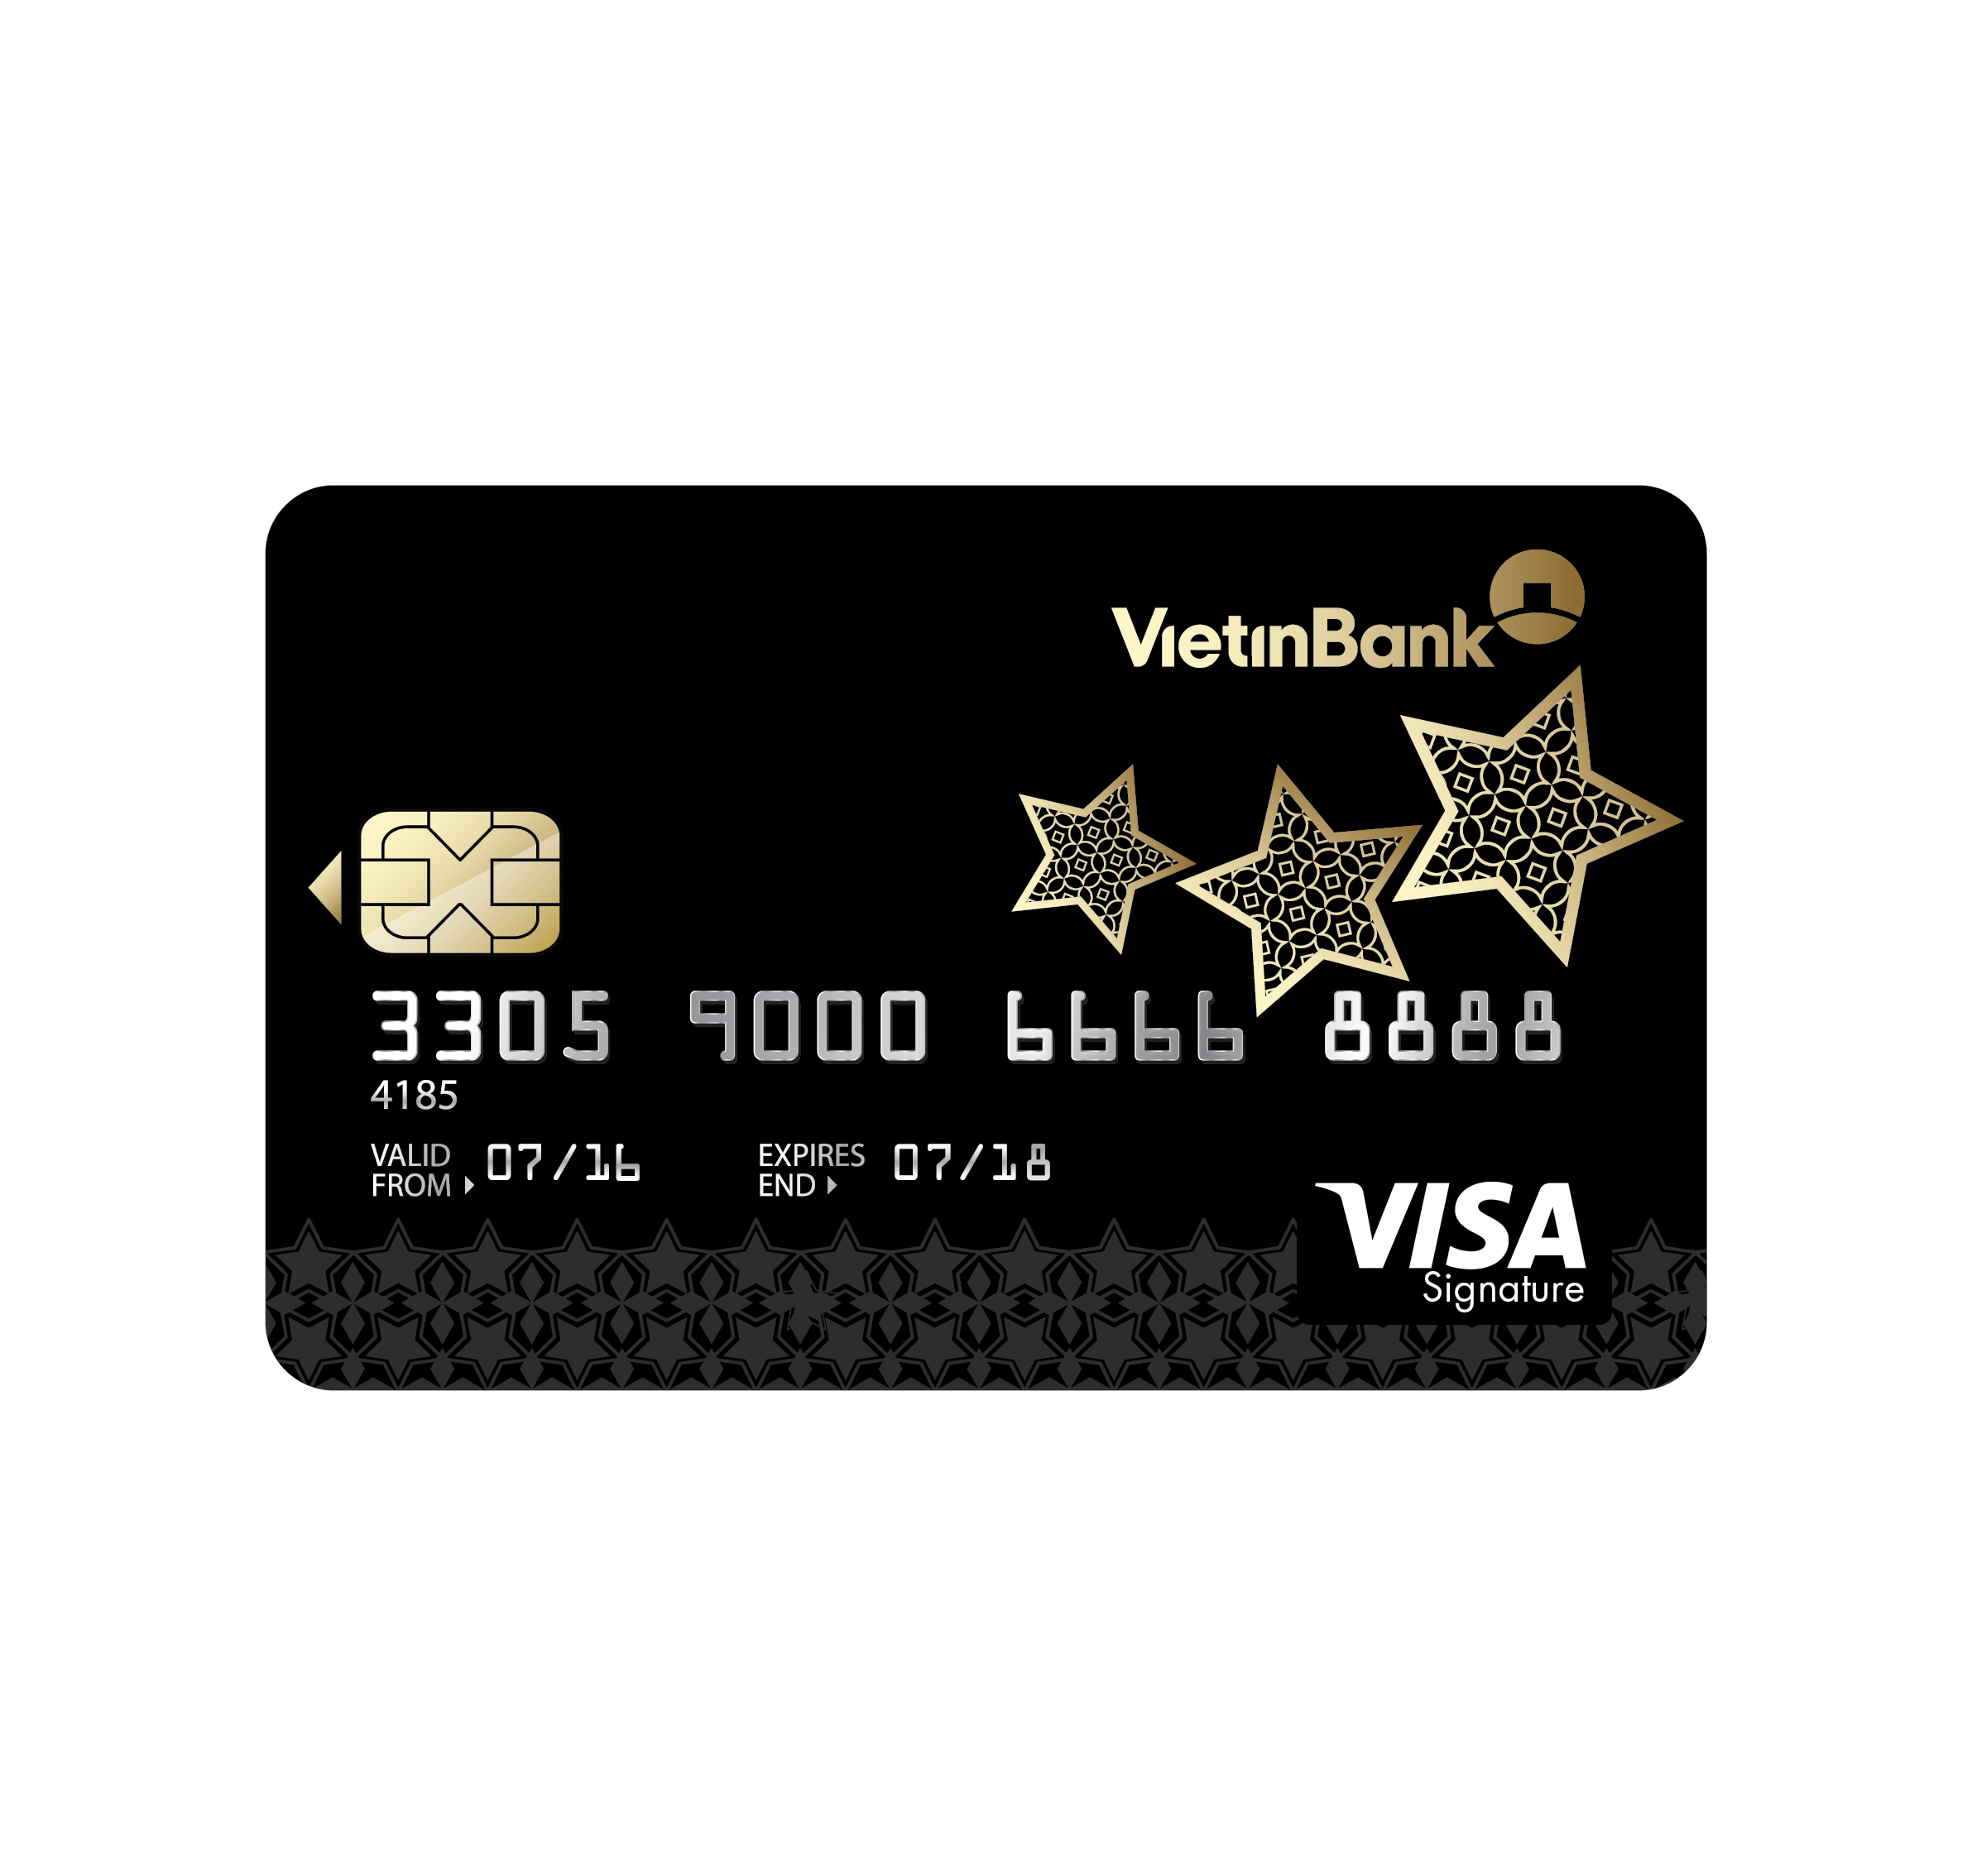 Thẻ Vietinbank Signature Visa dành riêng cho khách hàng cao cấp, có mức phí khá cao